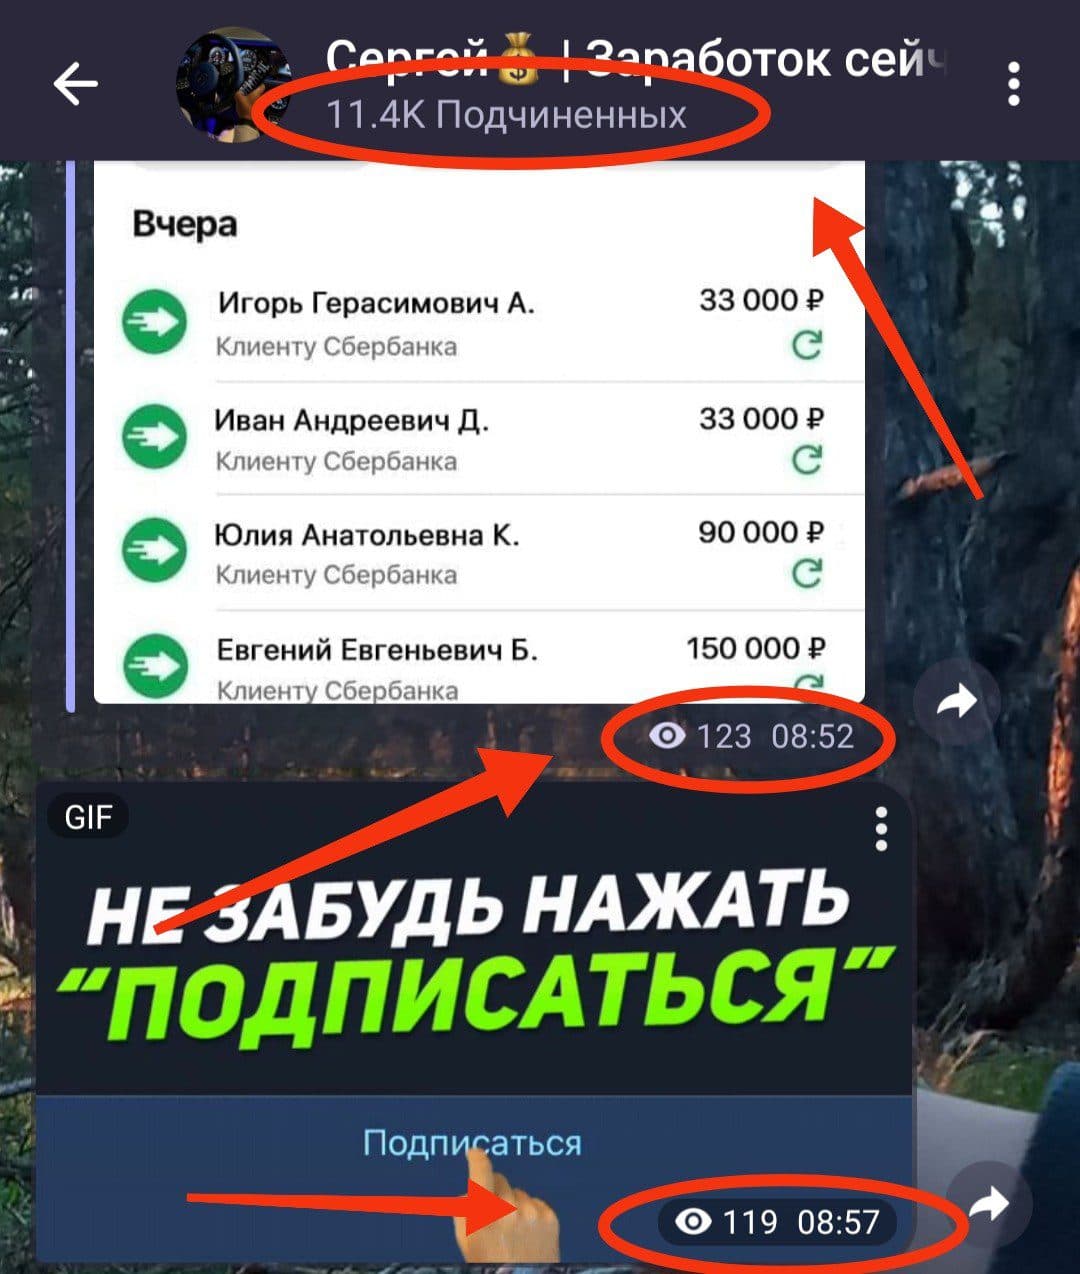 Телеграм канал Сергей Заработок Сейчас обзор